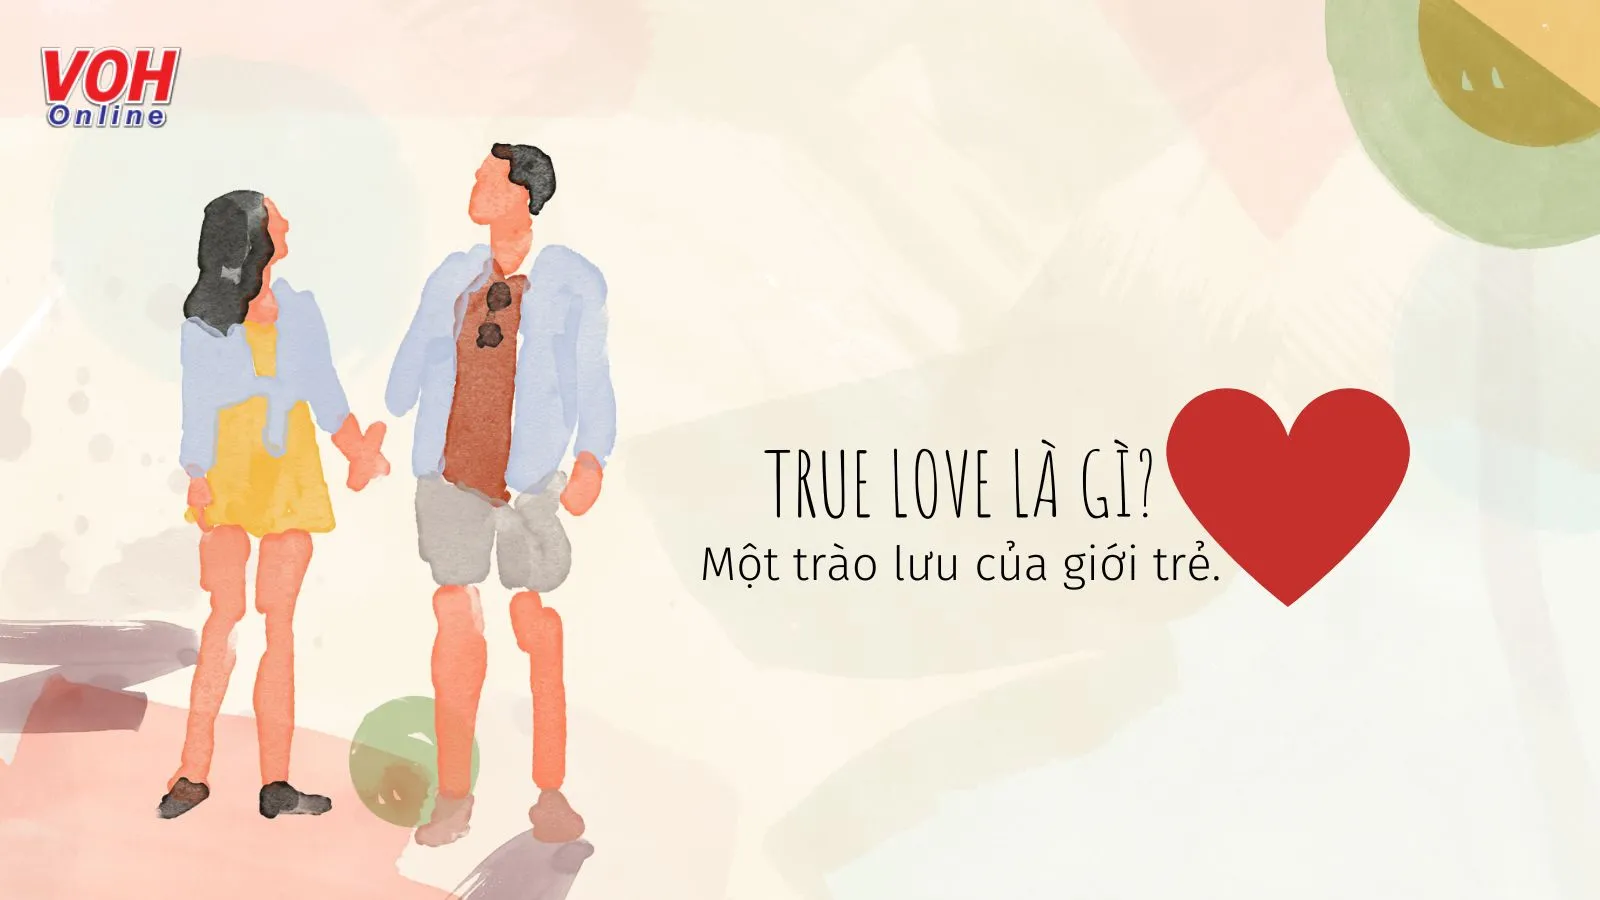 True love là gì? Làm sao biết được ai là true love của đời mình?